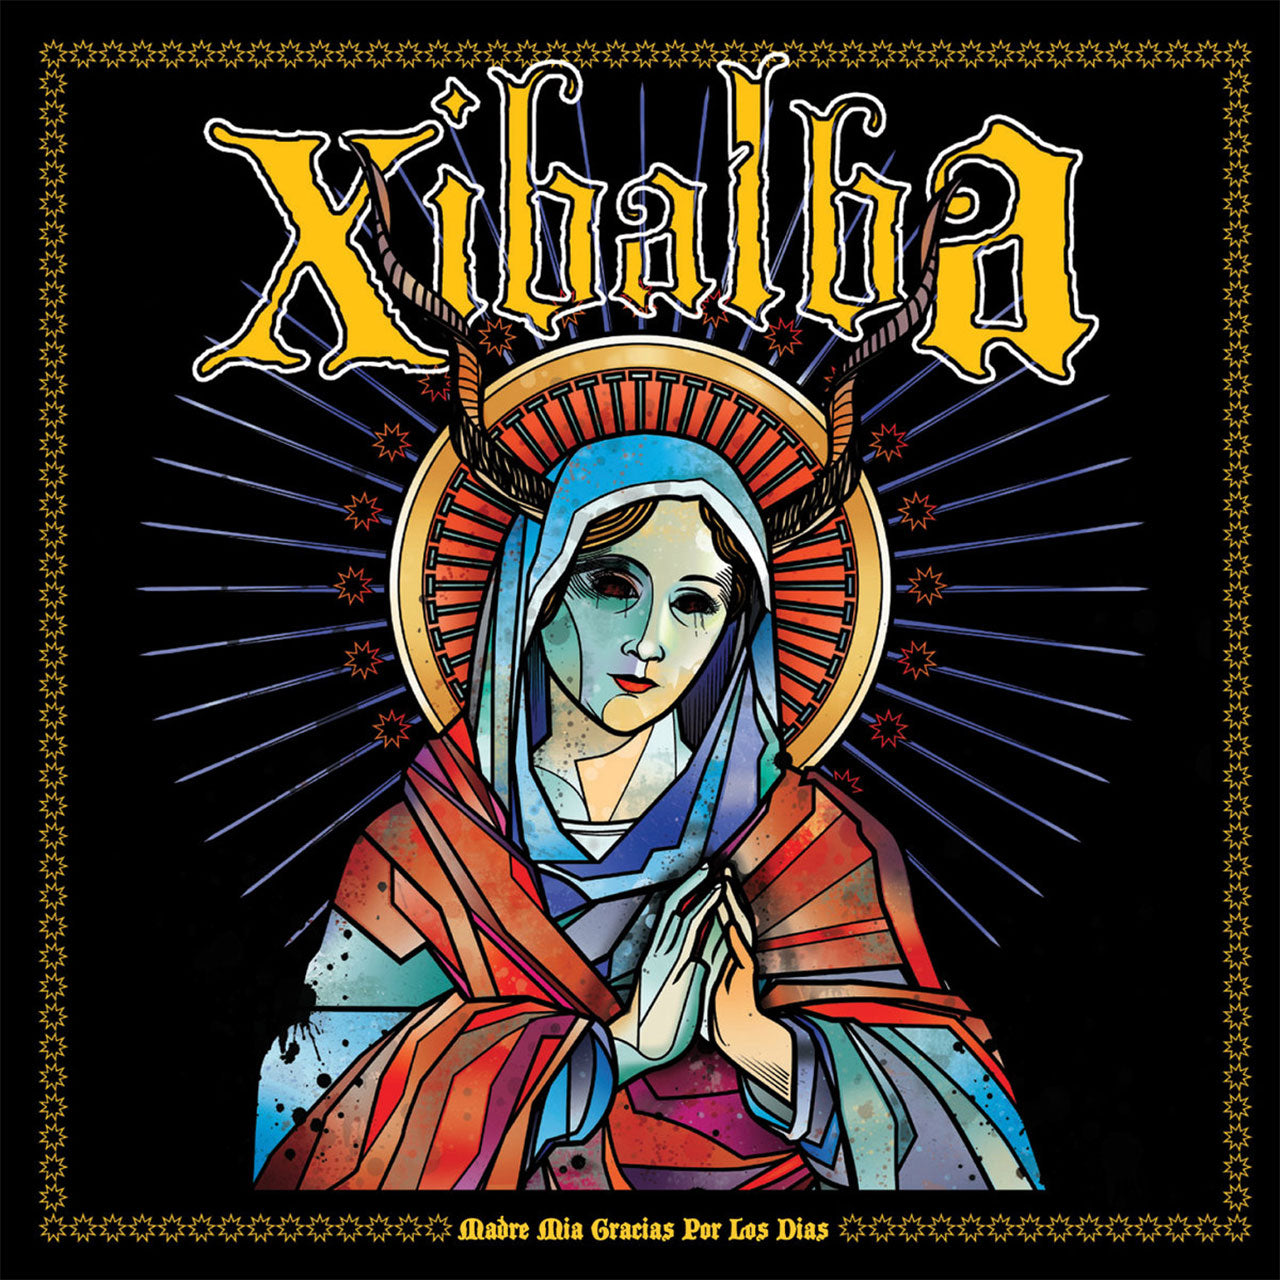 Xibalba - Madre mia gracias por los dias (2011 Reissue) (CD)